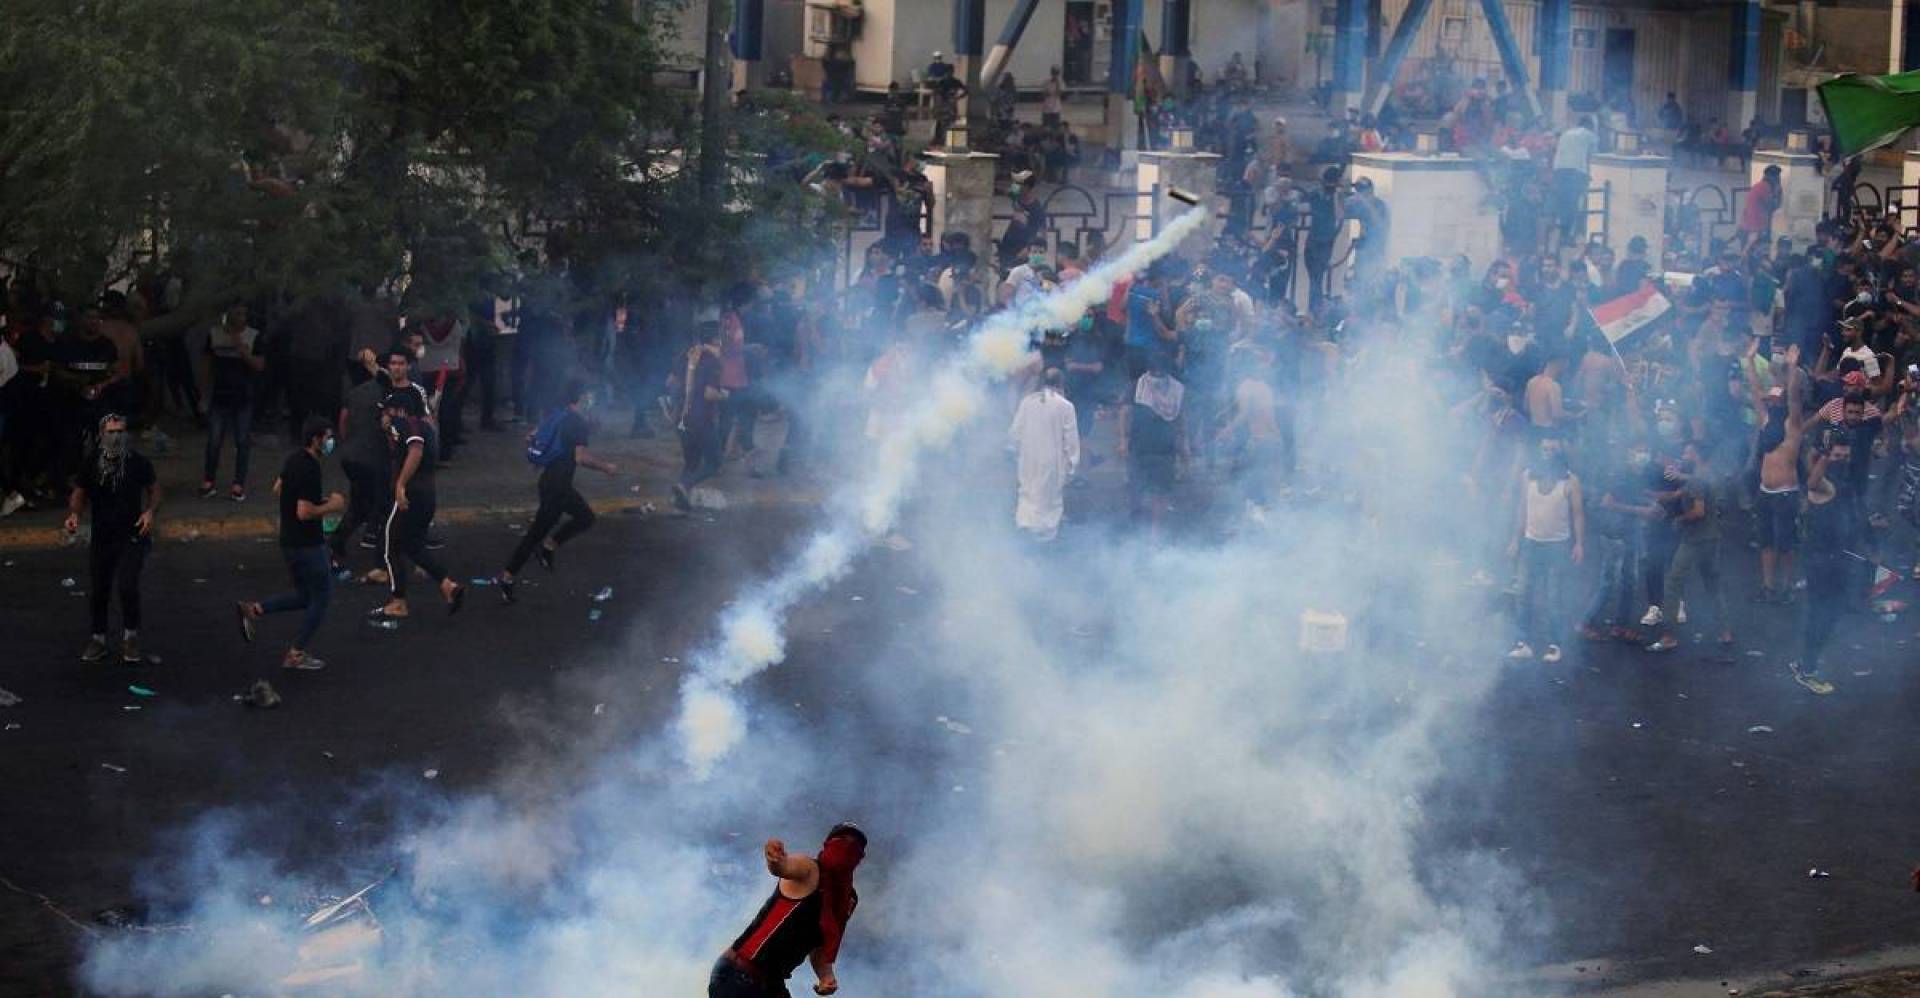 حقوق الانسان: متظاهرون يستخدمون العنف ضد قوات امنية ببغداد